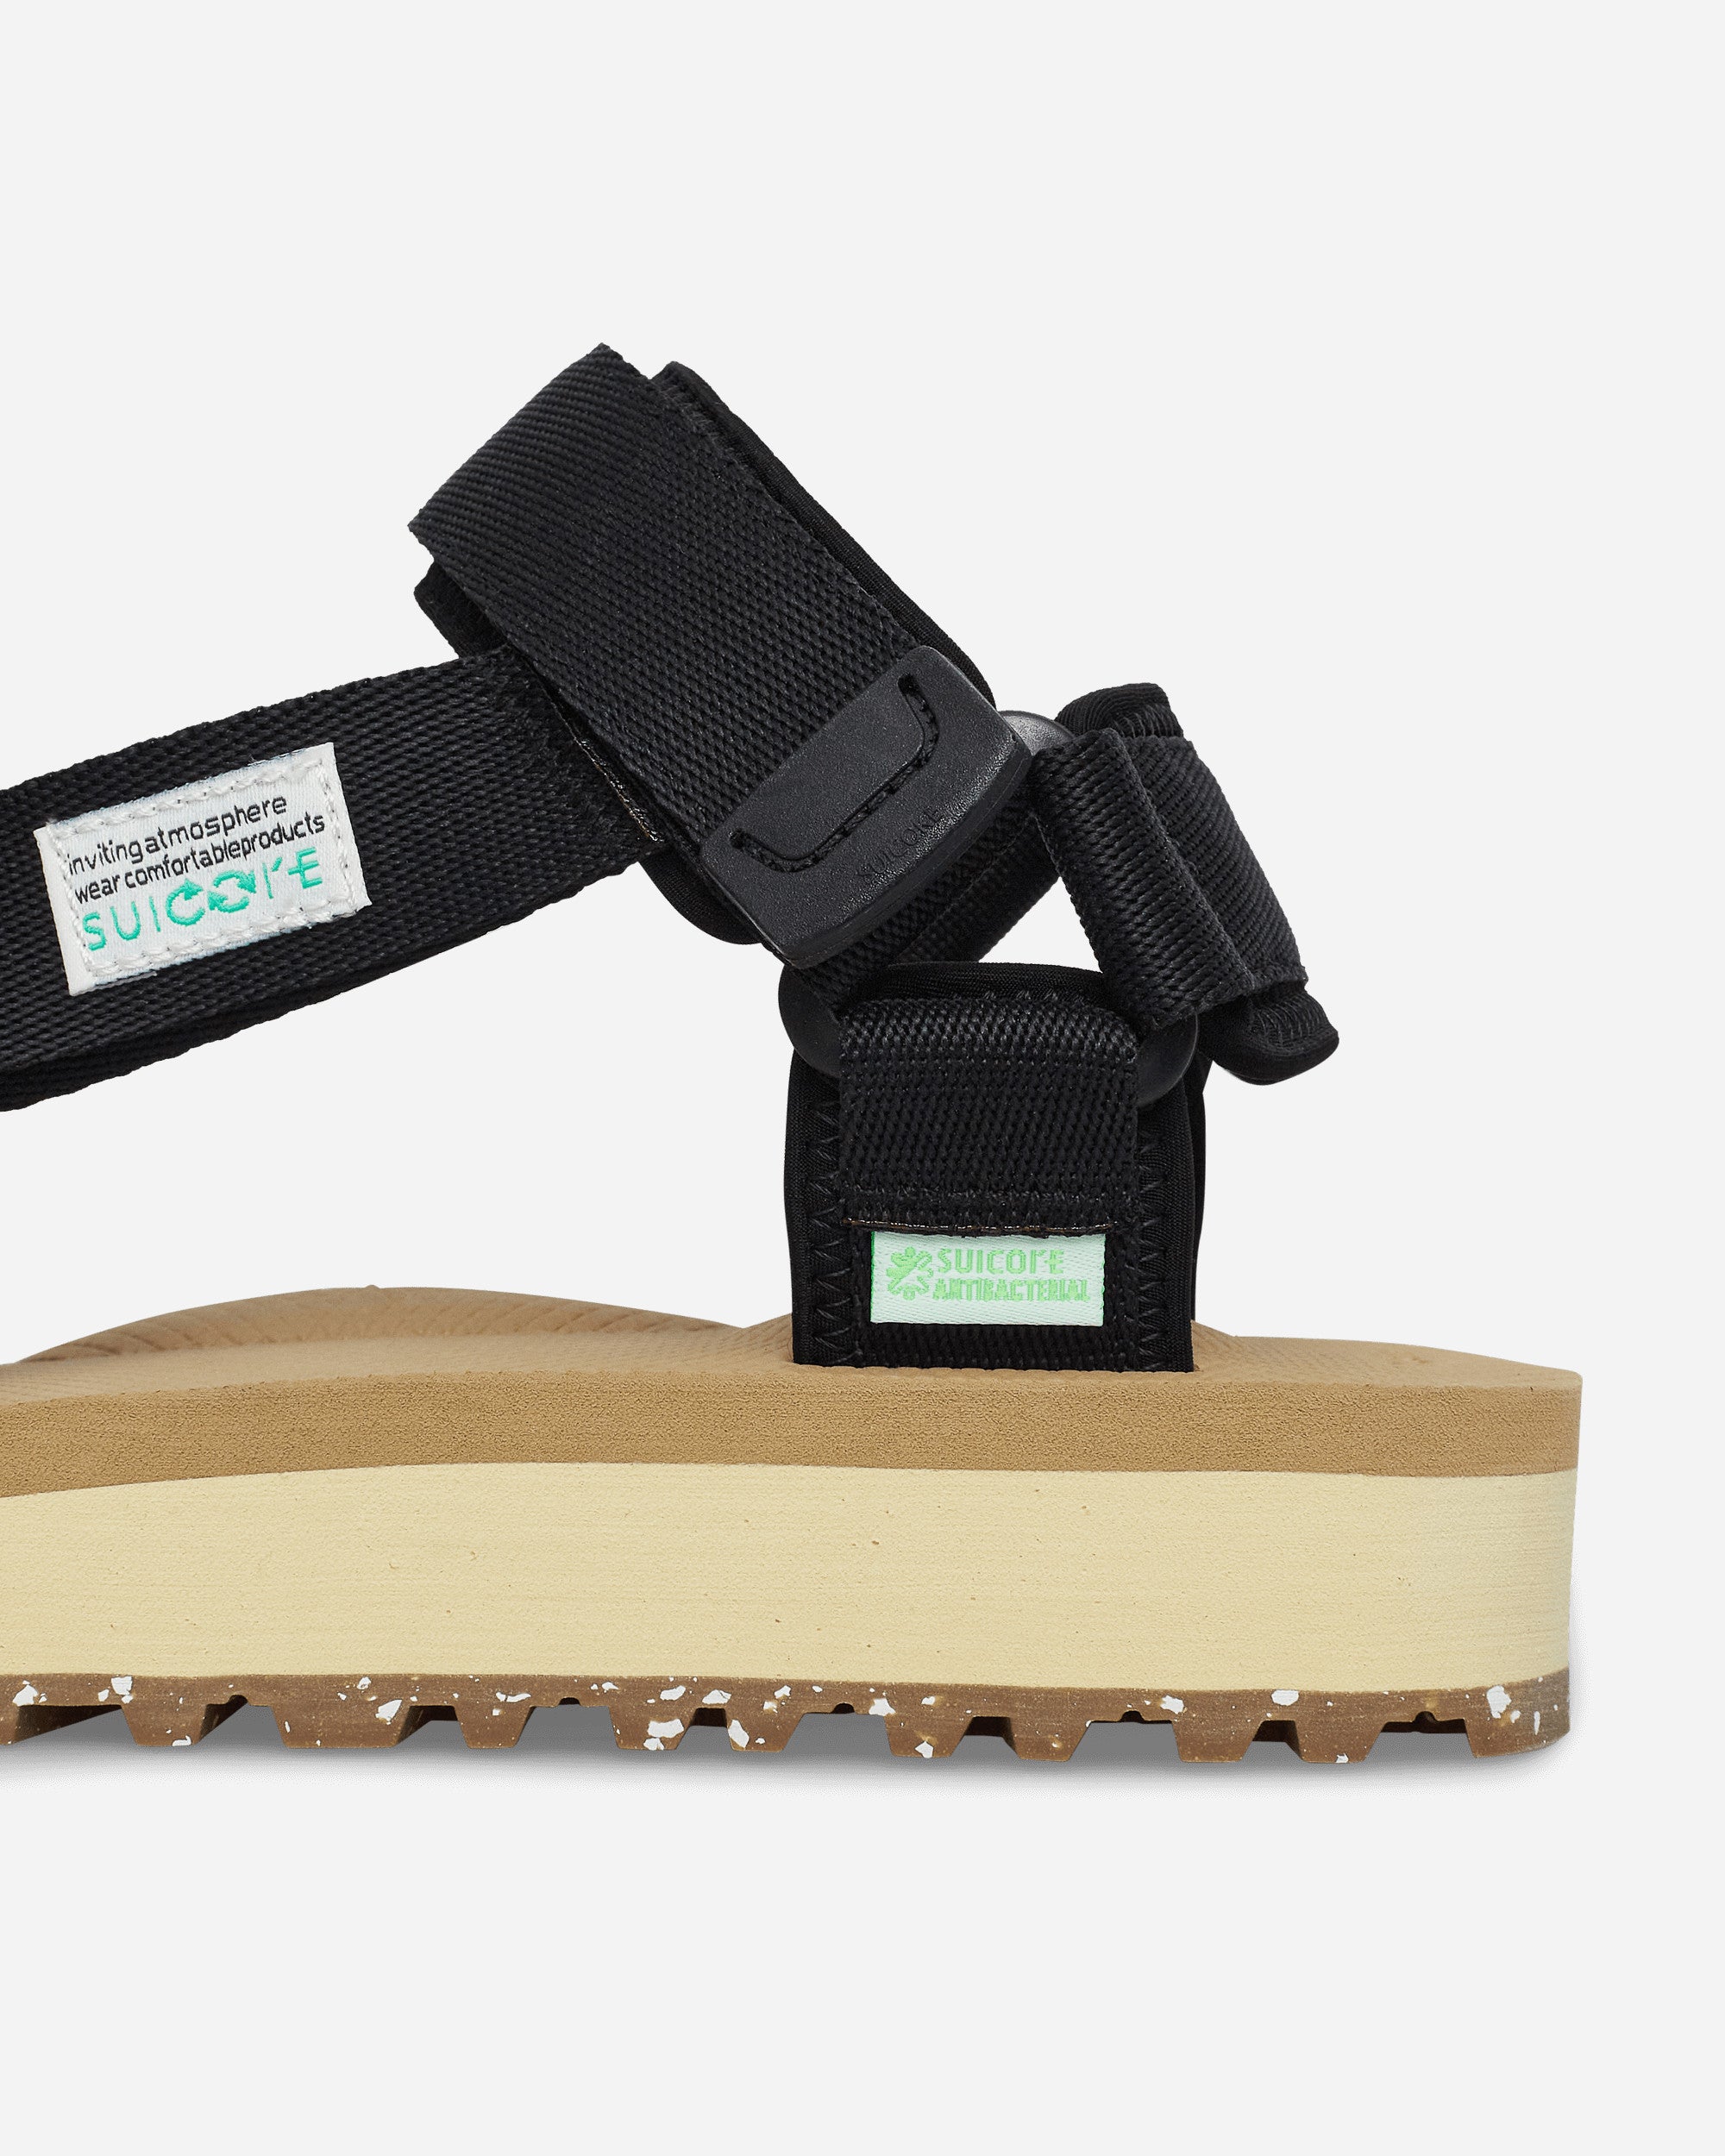 Suicoke Depa-2Cab-Eco Black X Beige Sandals and Slides Sandal OG-022-2Cab-ECO- BLB